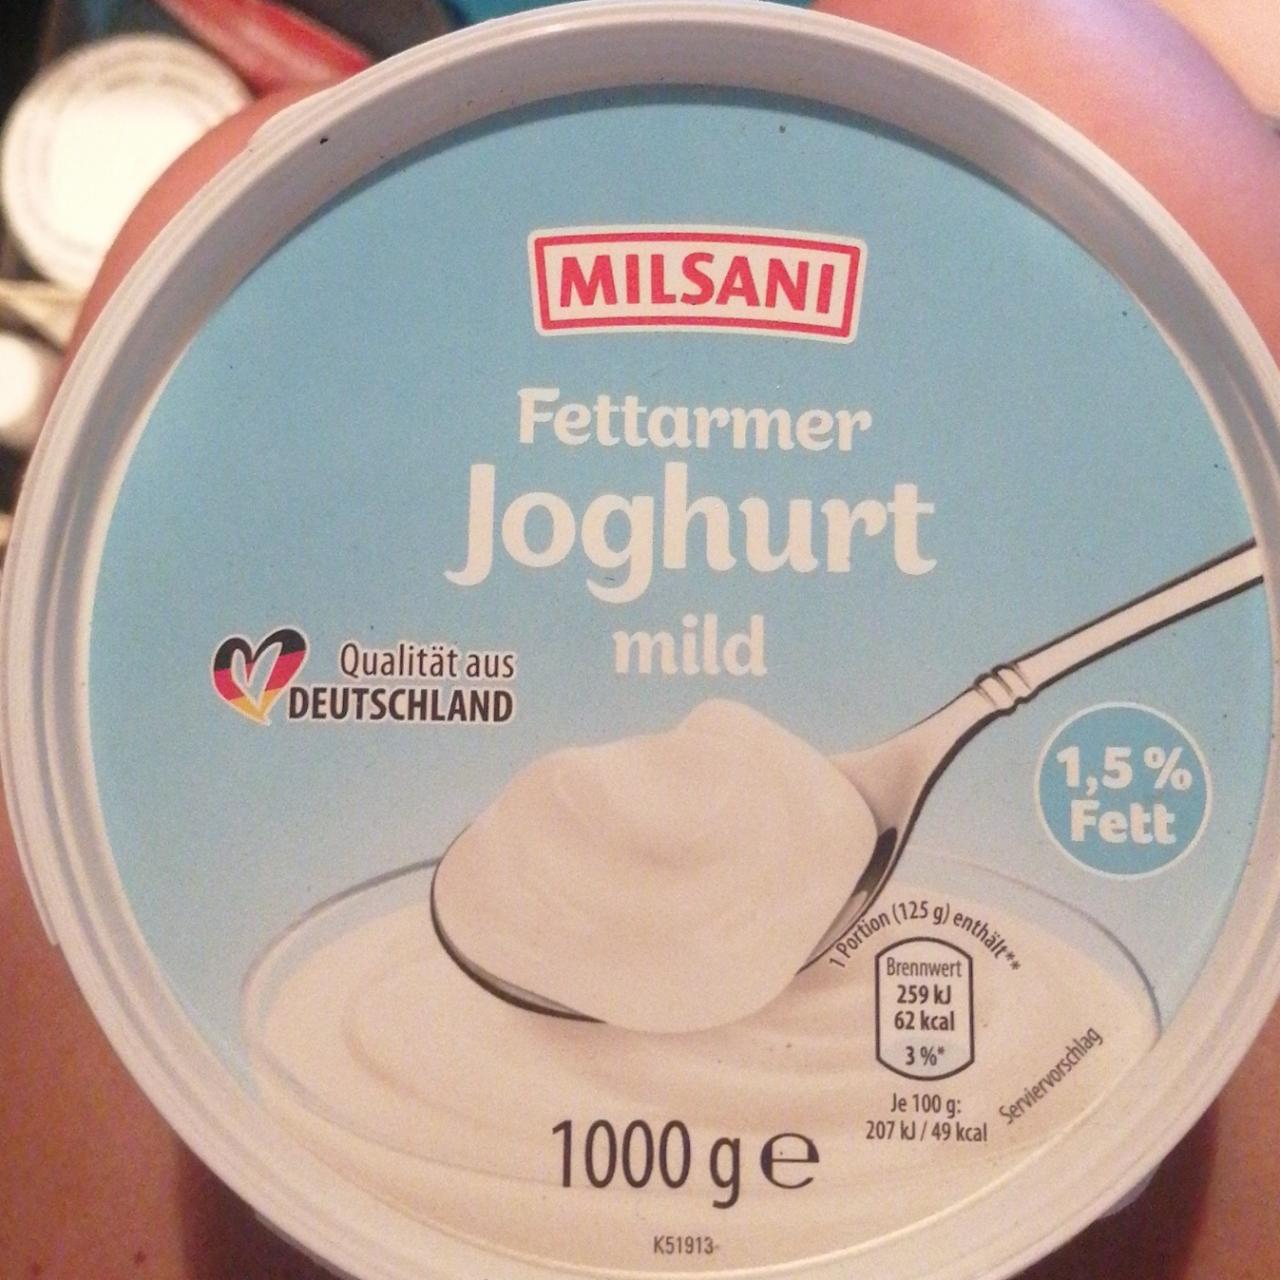 Fotografie - Fettarmer Joghurt mild 1,5% Fett Milsani